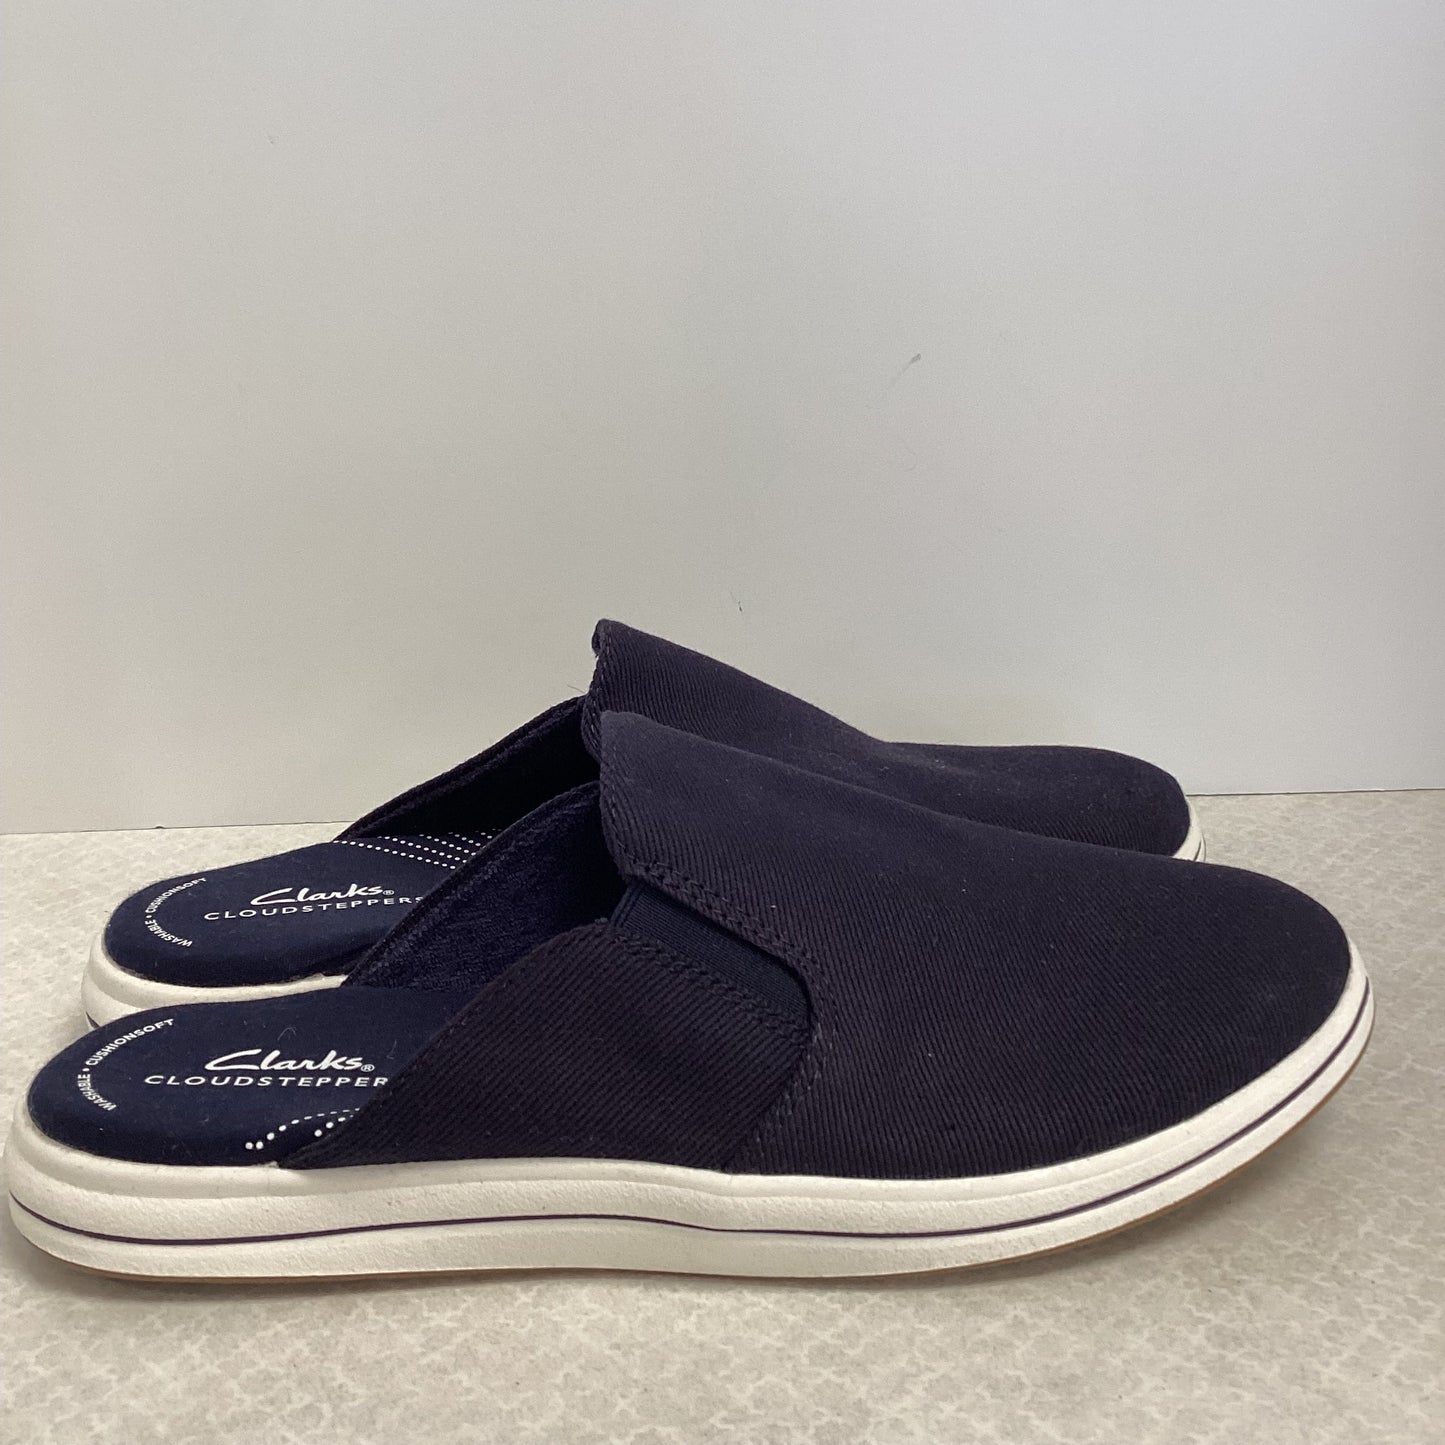 Blue Shoes Flats Clarks, Size 9.5